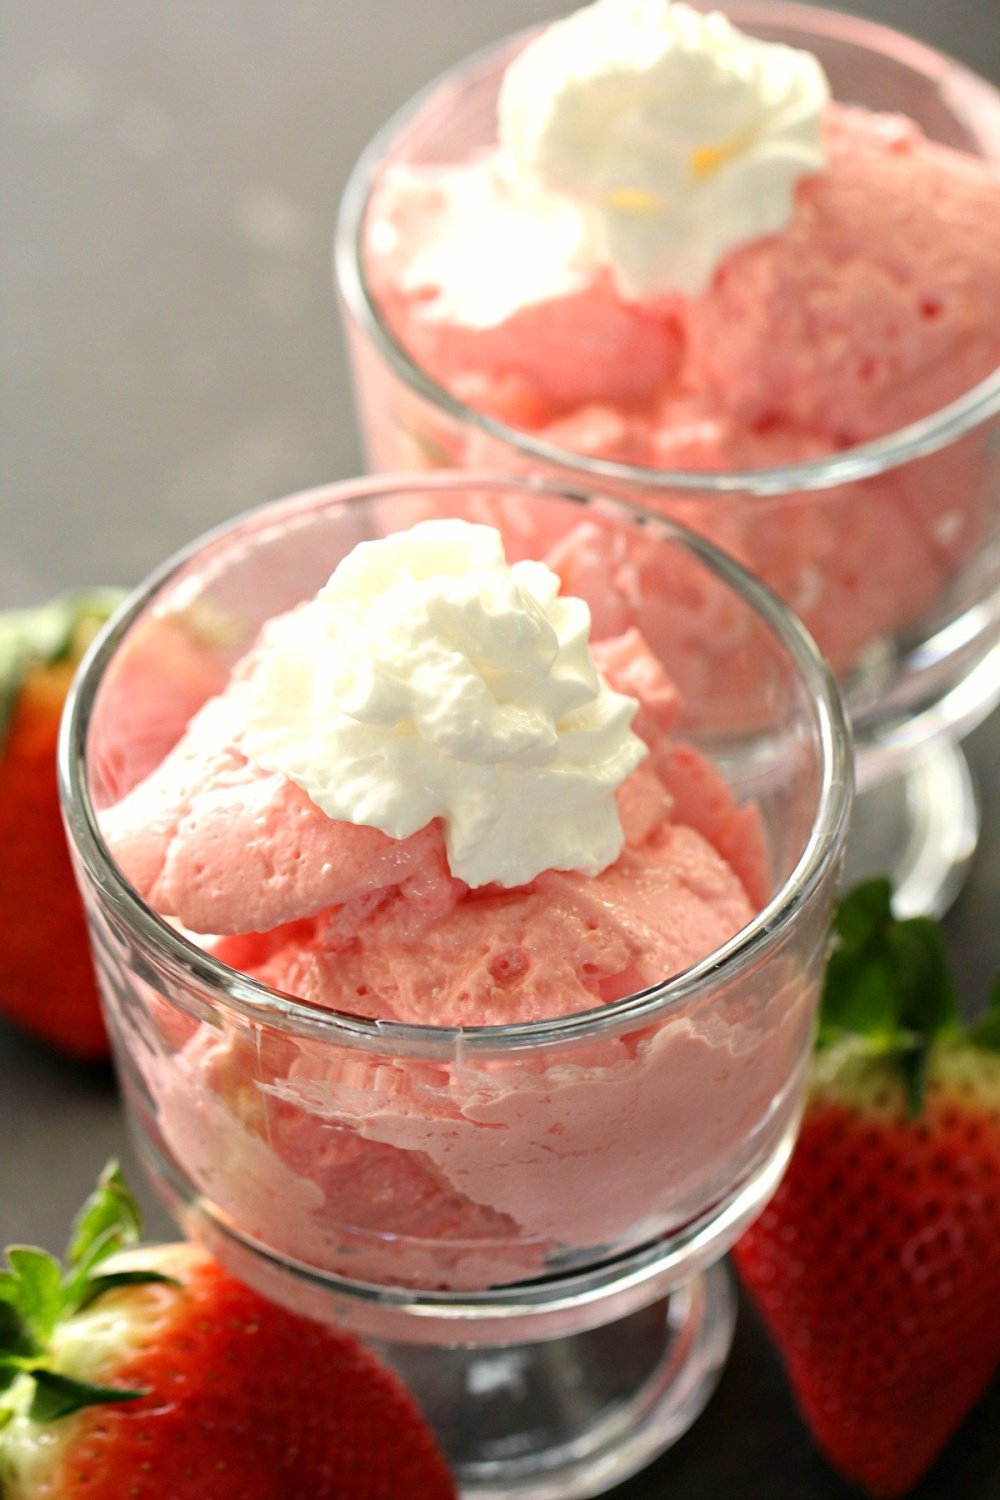 Strawberries and Cream Jello Dessert Salad Recipe